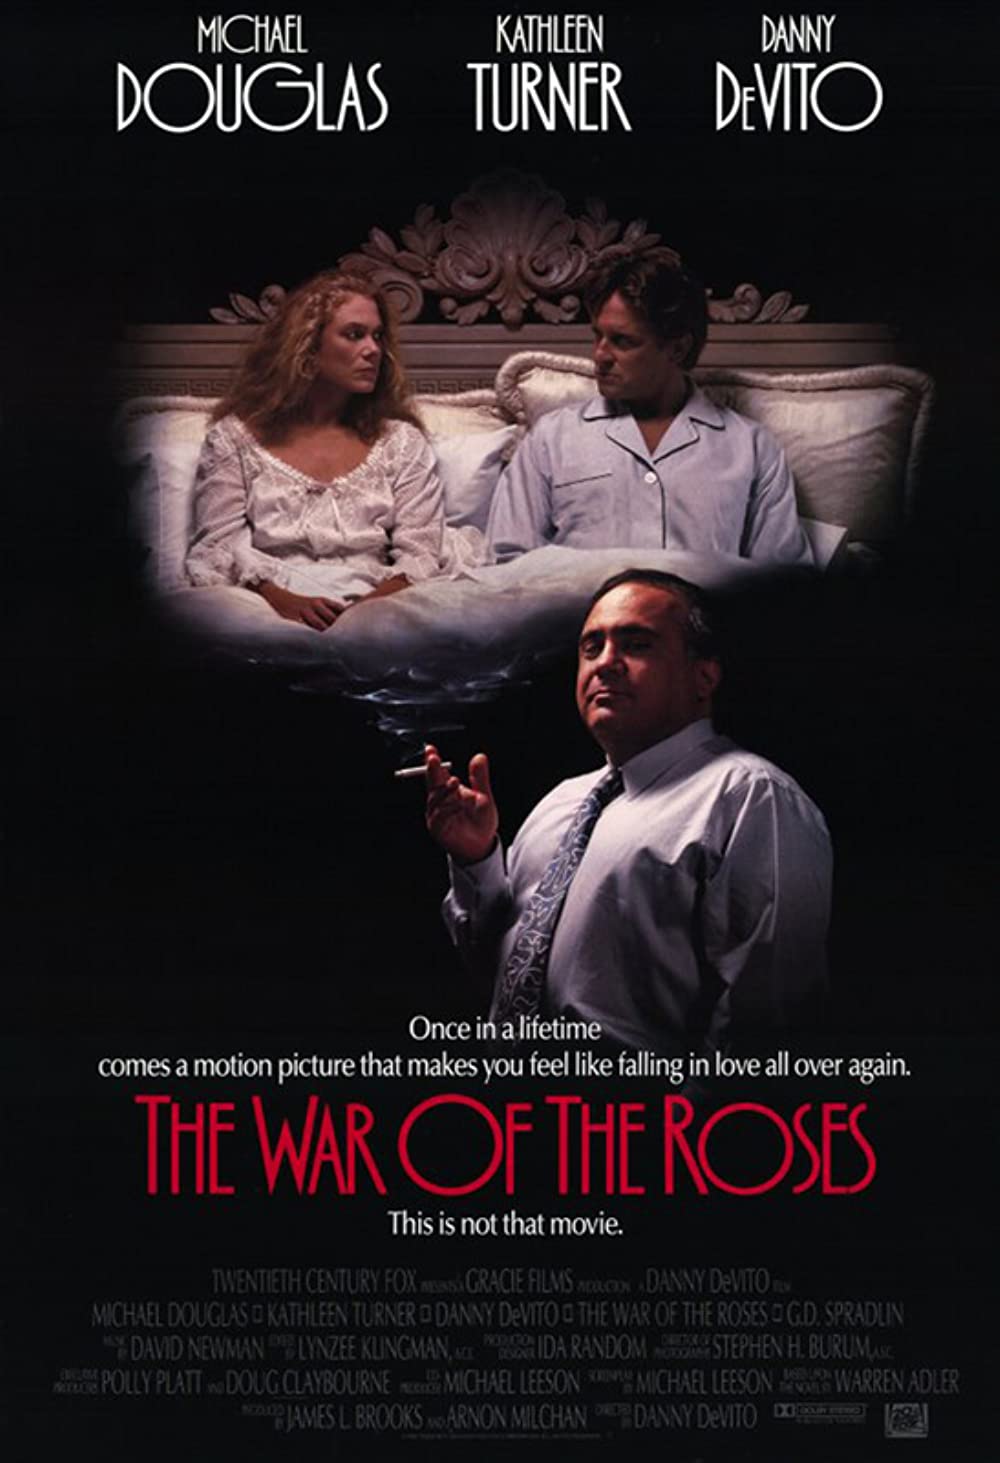 Filmbeschreibung zu The War of the Roses